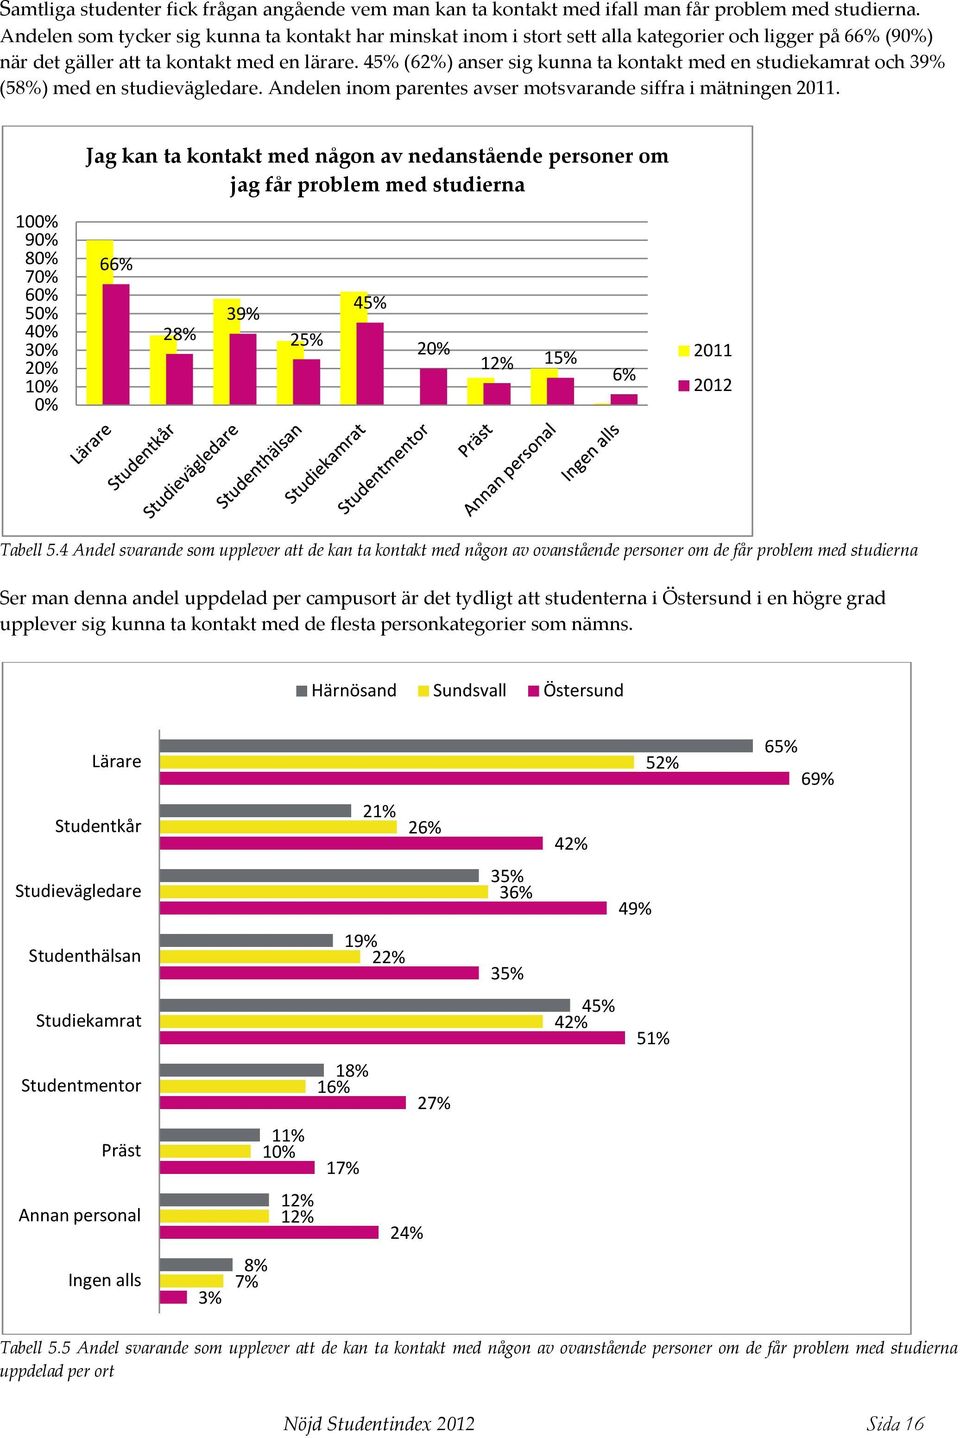 45% (62%) anser sig kunna ta kontakt med en studiekamrat och 39% (58%) med en studievägledare. Andelen inom parentes avser motsvarande siffra i mätningen 2011.